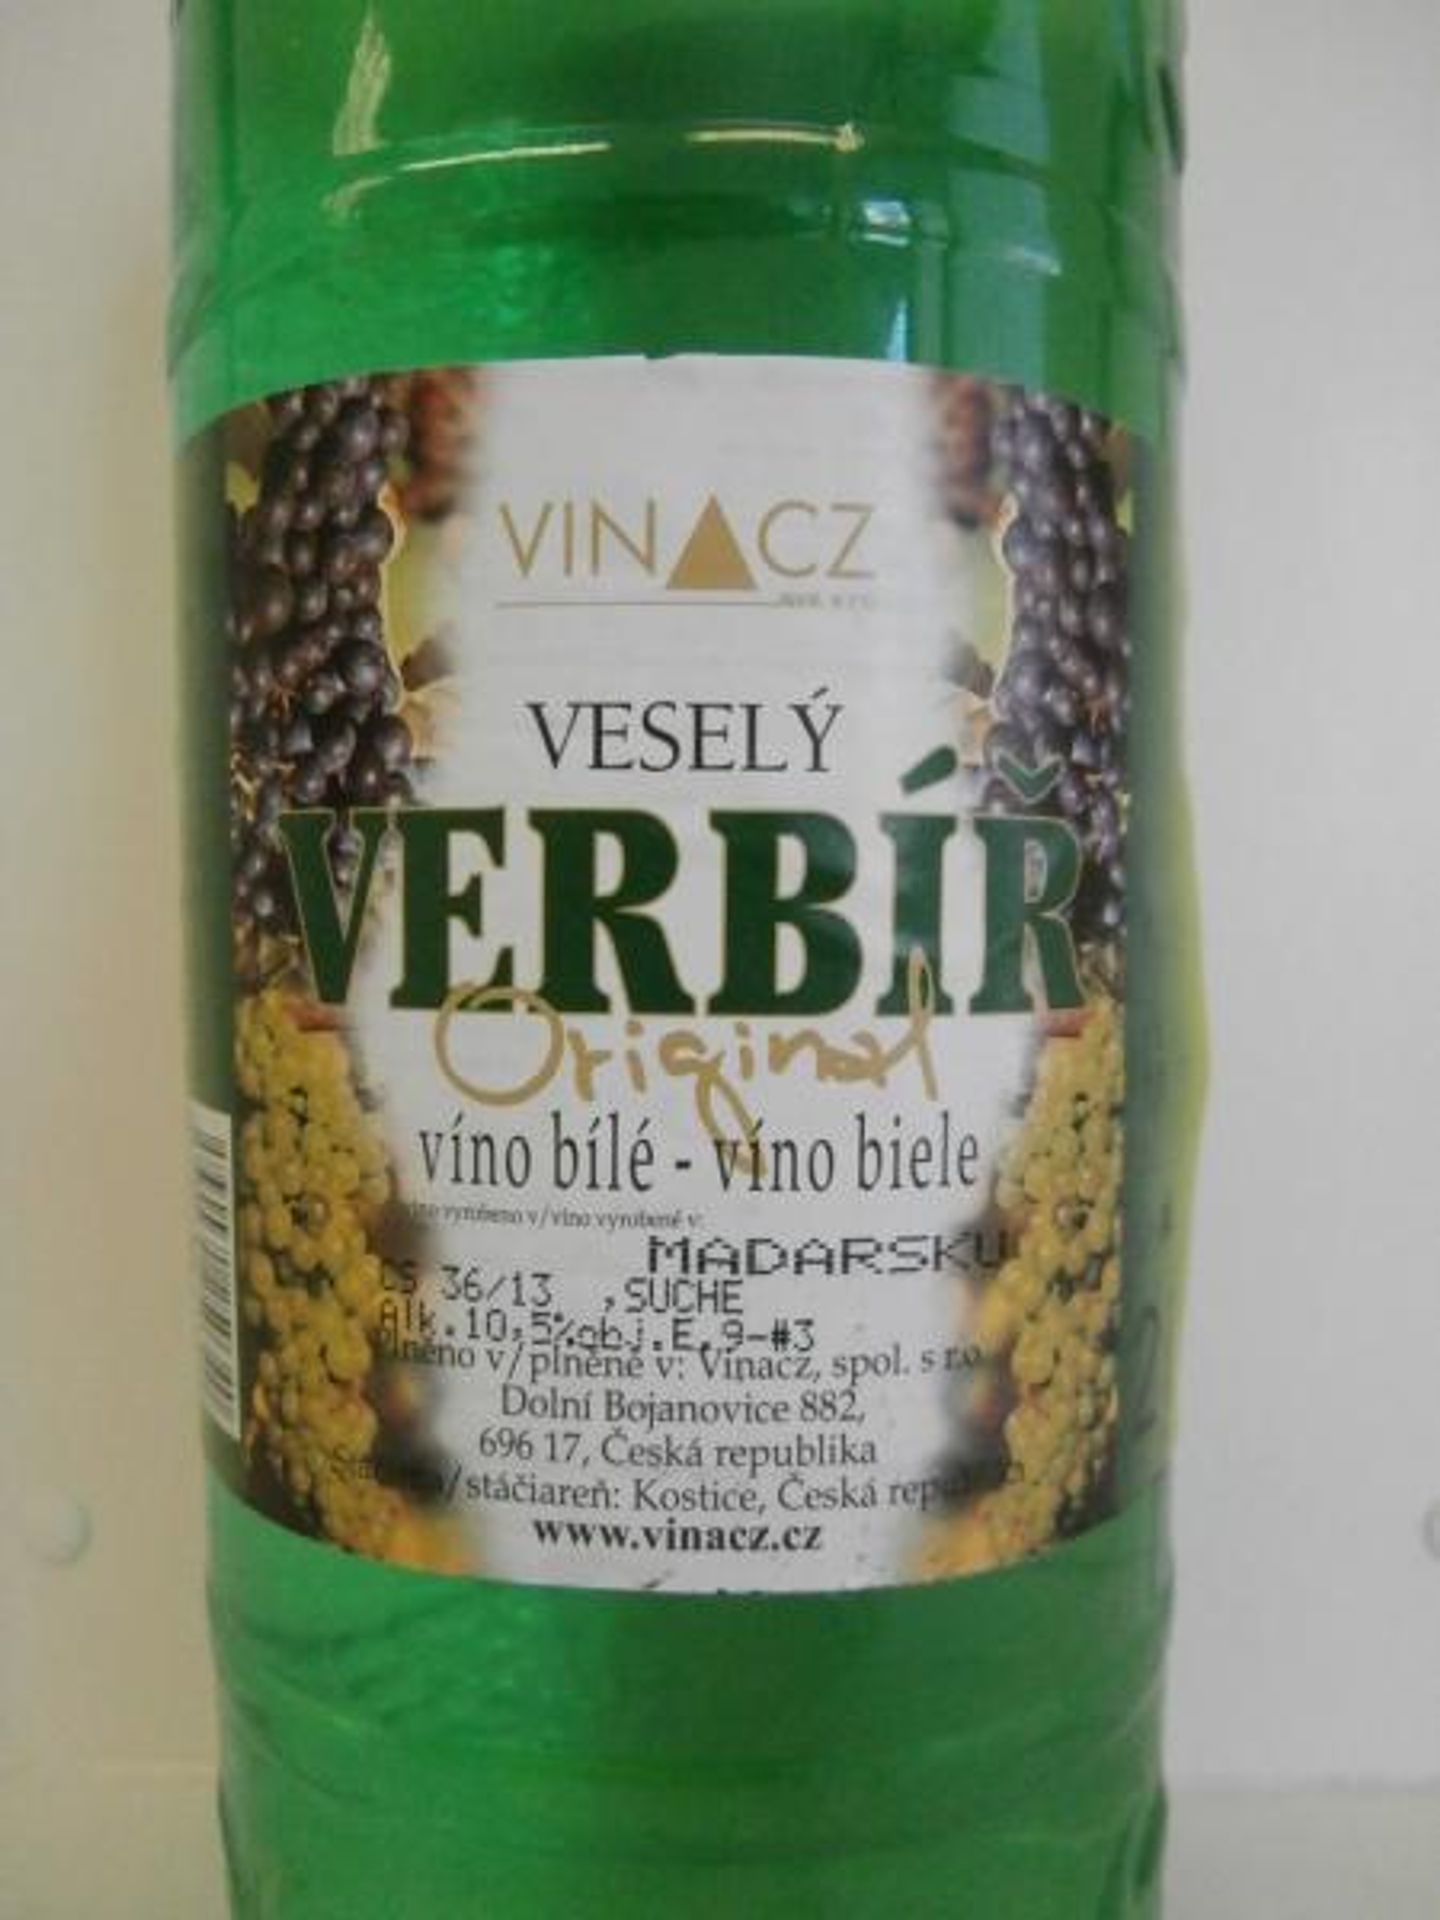 Vinacz: Veselý verbíř - 2 - GALERIE: Vinacz - Veselý verbíř - víno bílé, suché (2/4)